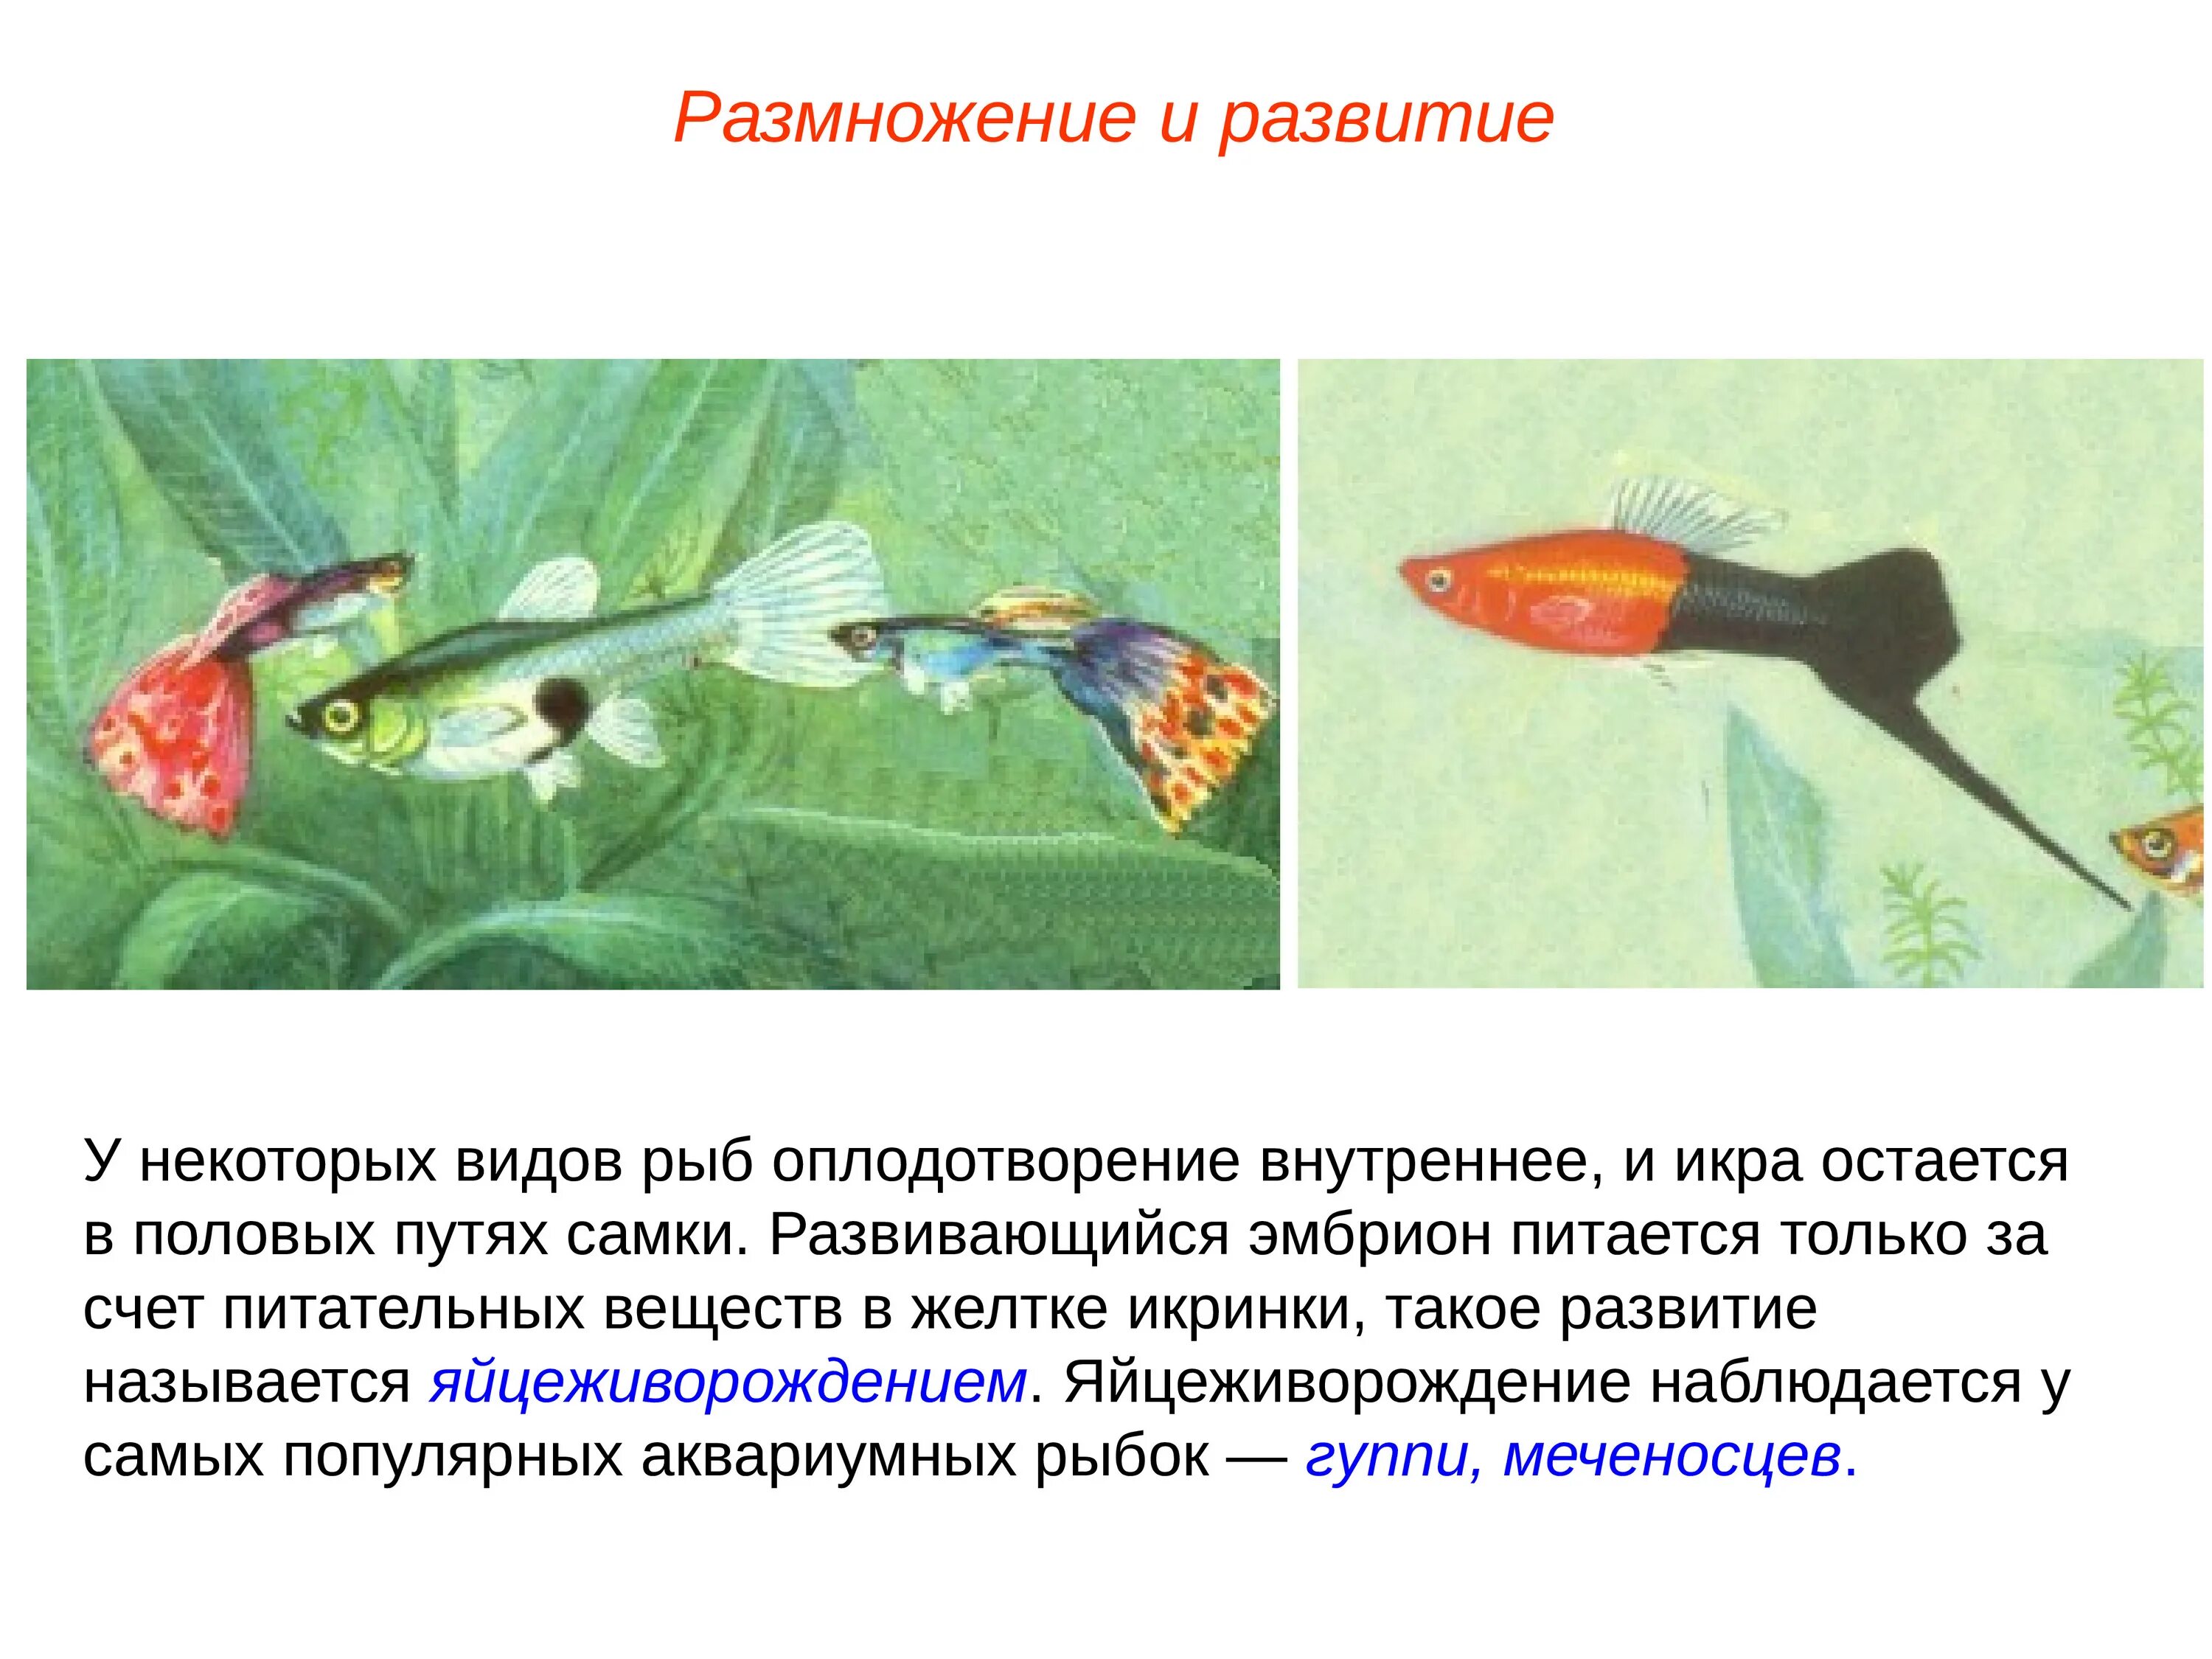 Размножение и оплодотворение у рыб. Внутреннее оплодотворение у рыб. Развитие рыб. Этапы размножения рыб.